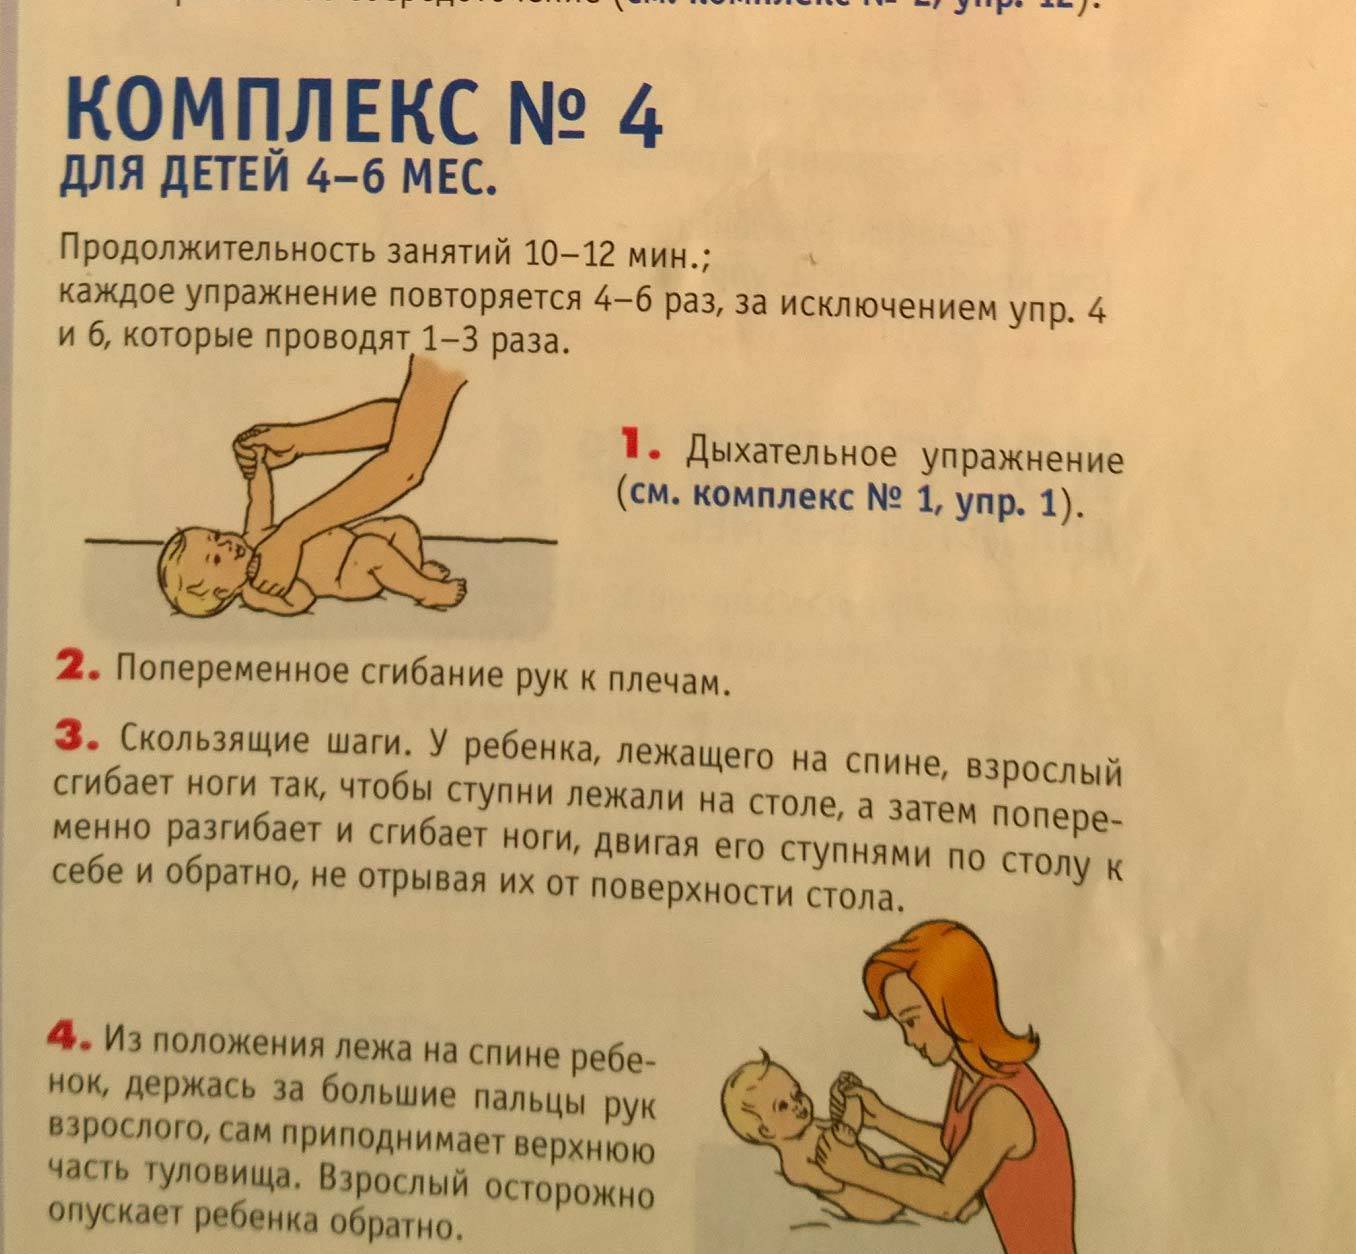 Как делать массаж новорожденному в домашних условиях